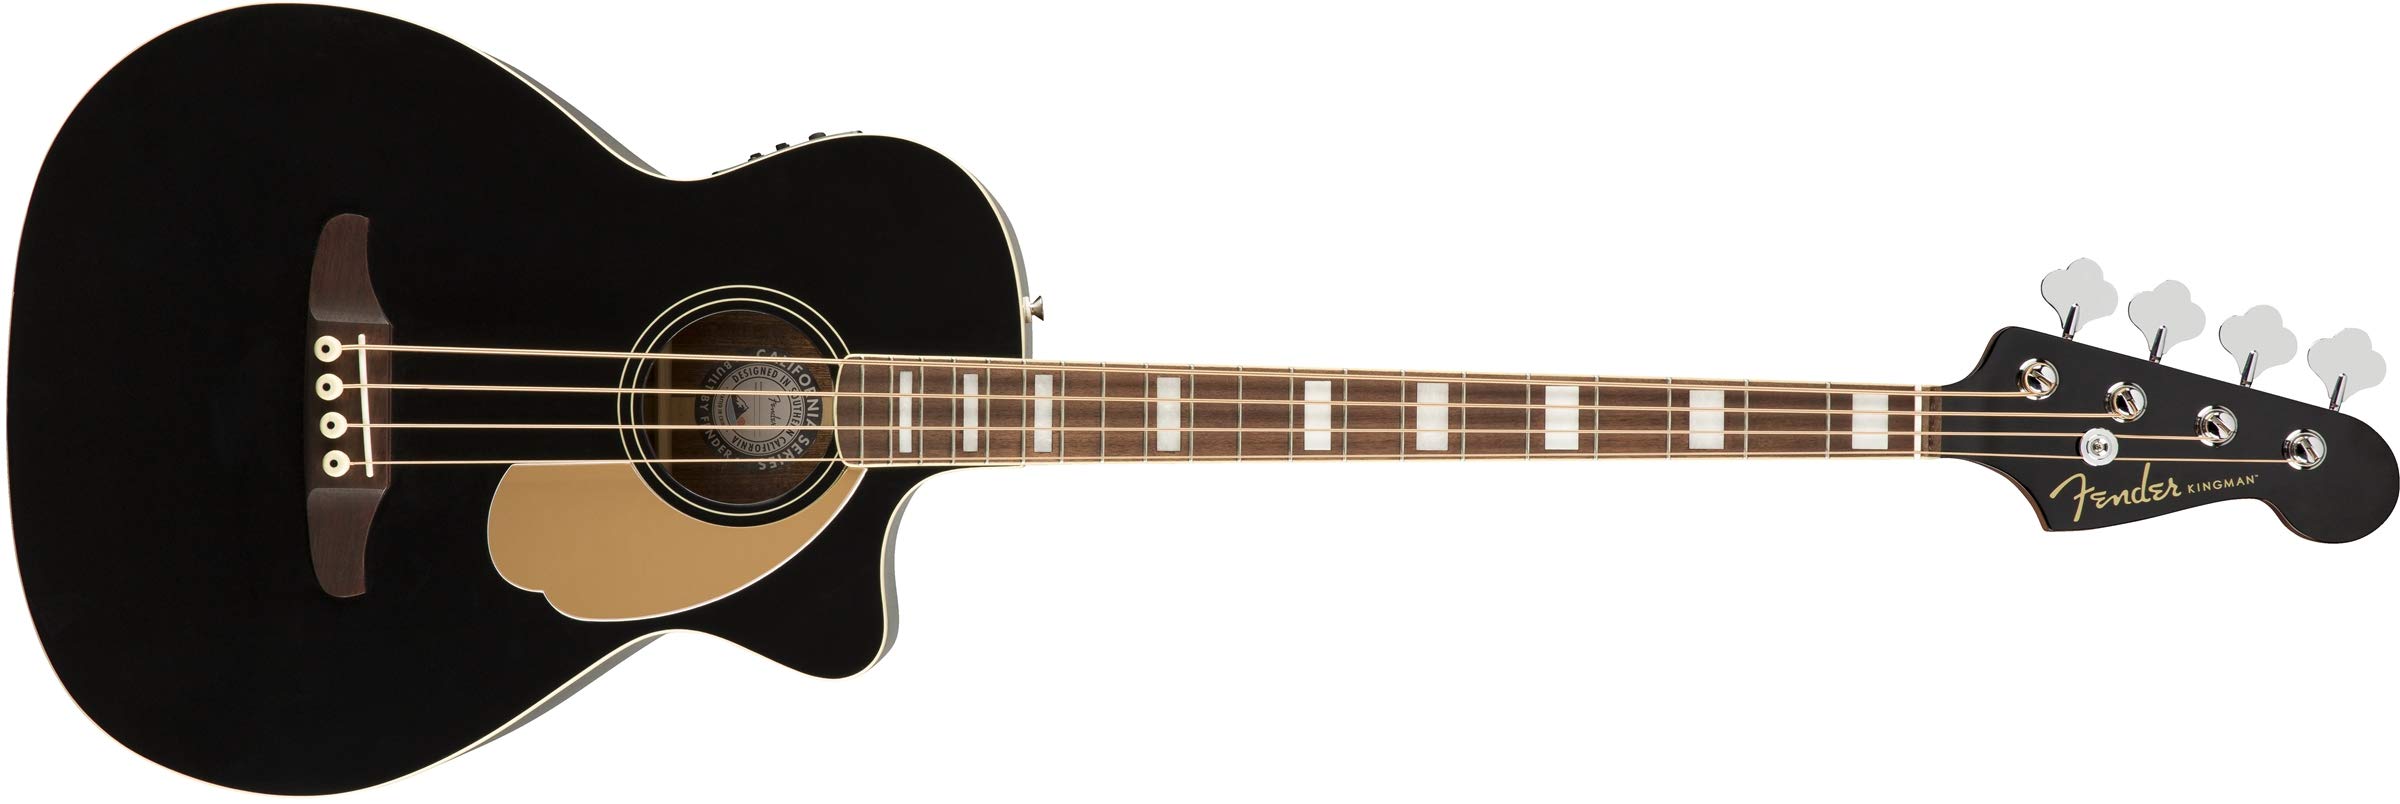 Fender Акустическая бас-гитара Kingman (V2) — черная — с сумкой — накладка на гриф из орехового дерева